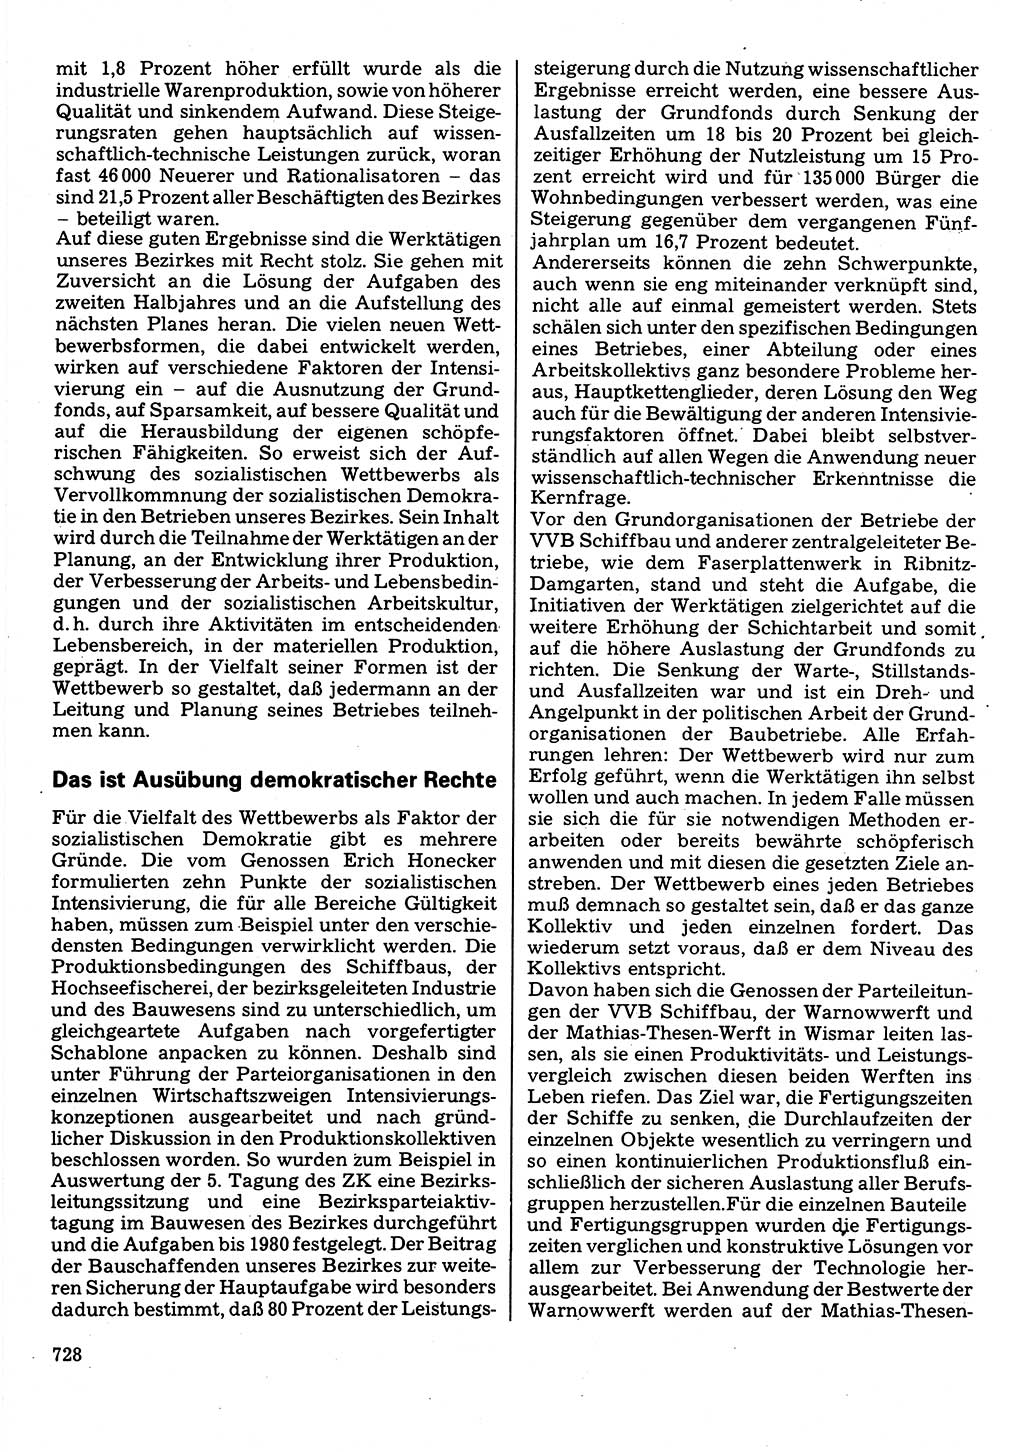 Neuer Weg (NW), Organ des Zentralkomitees (ZK) der SED (Sozialistische Einheitspartei Deutschlands) für Fragen des Parteilebens, 32. Jahrgang [Deutsche Demokratische Republik (DDR)] 1977, Seite 728 (NW ZK SED DDR 1977, S. 728)